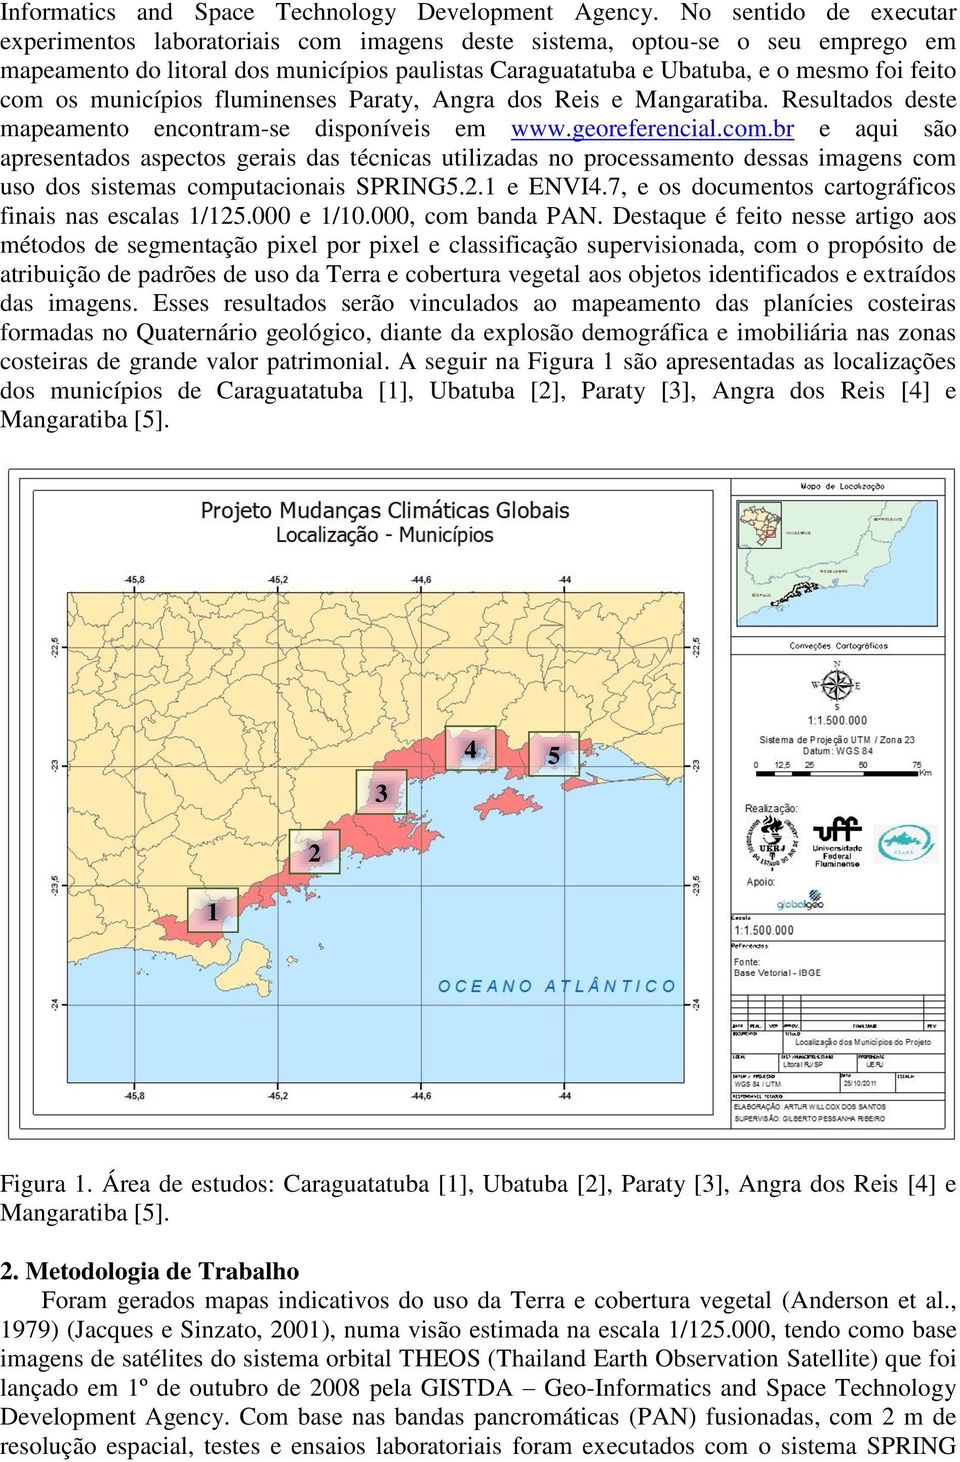 os municípios fluminenses Paraty, Angra dos Reis e Mangaratiba. Resultados deste mapeamento encontram-se disponíveis em www.georeferencial.com.